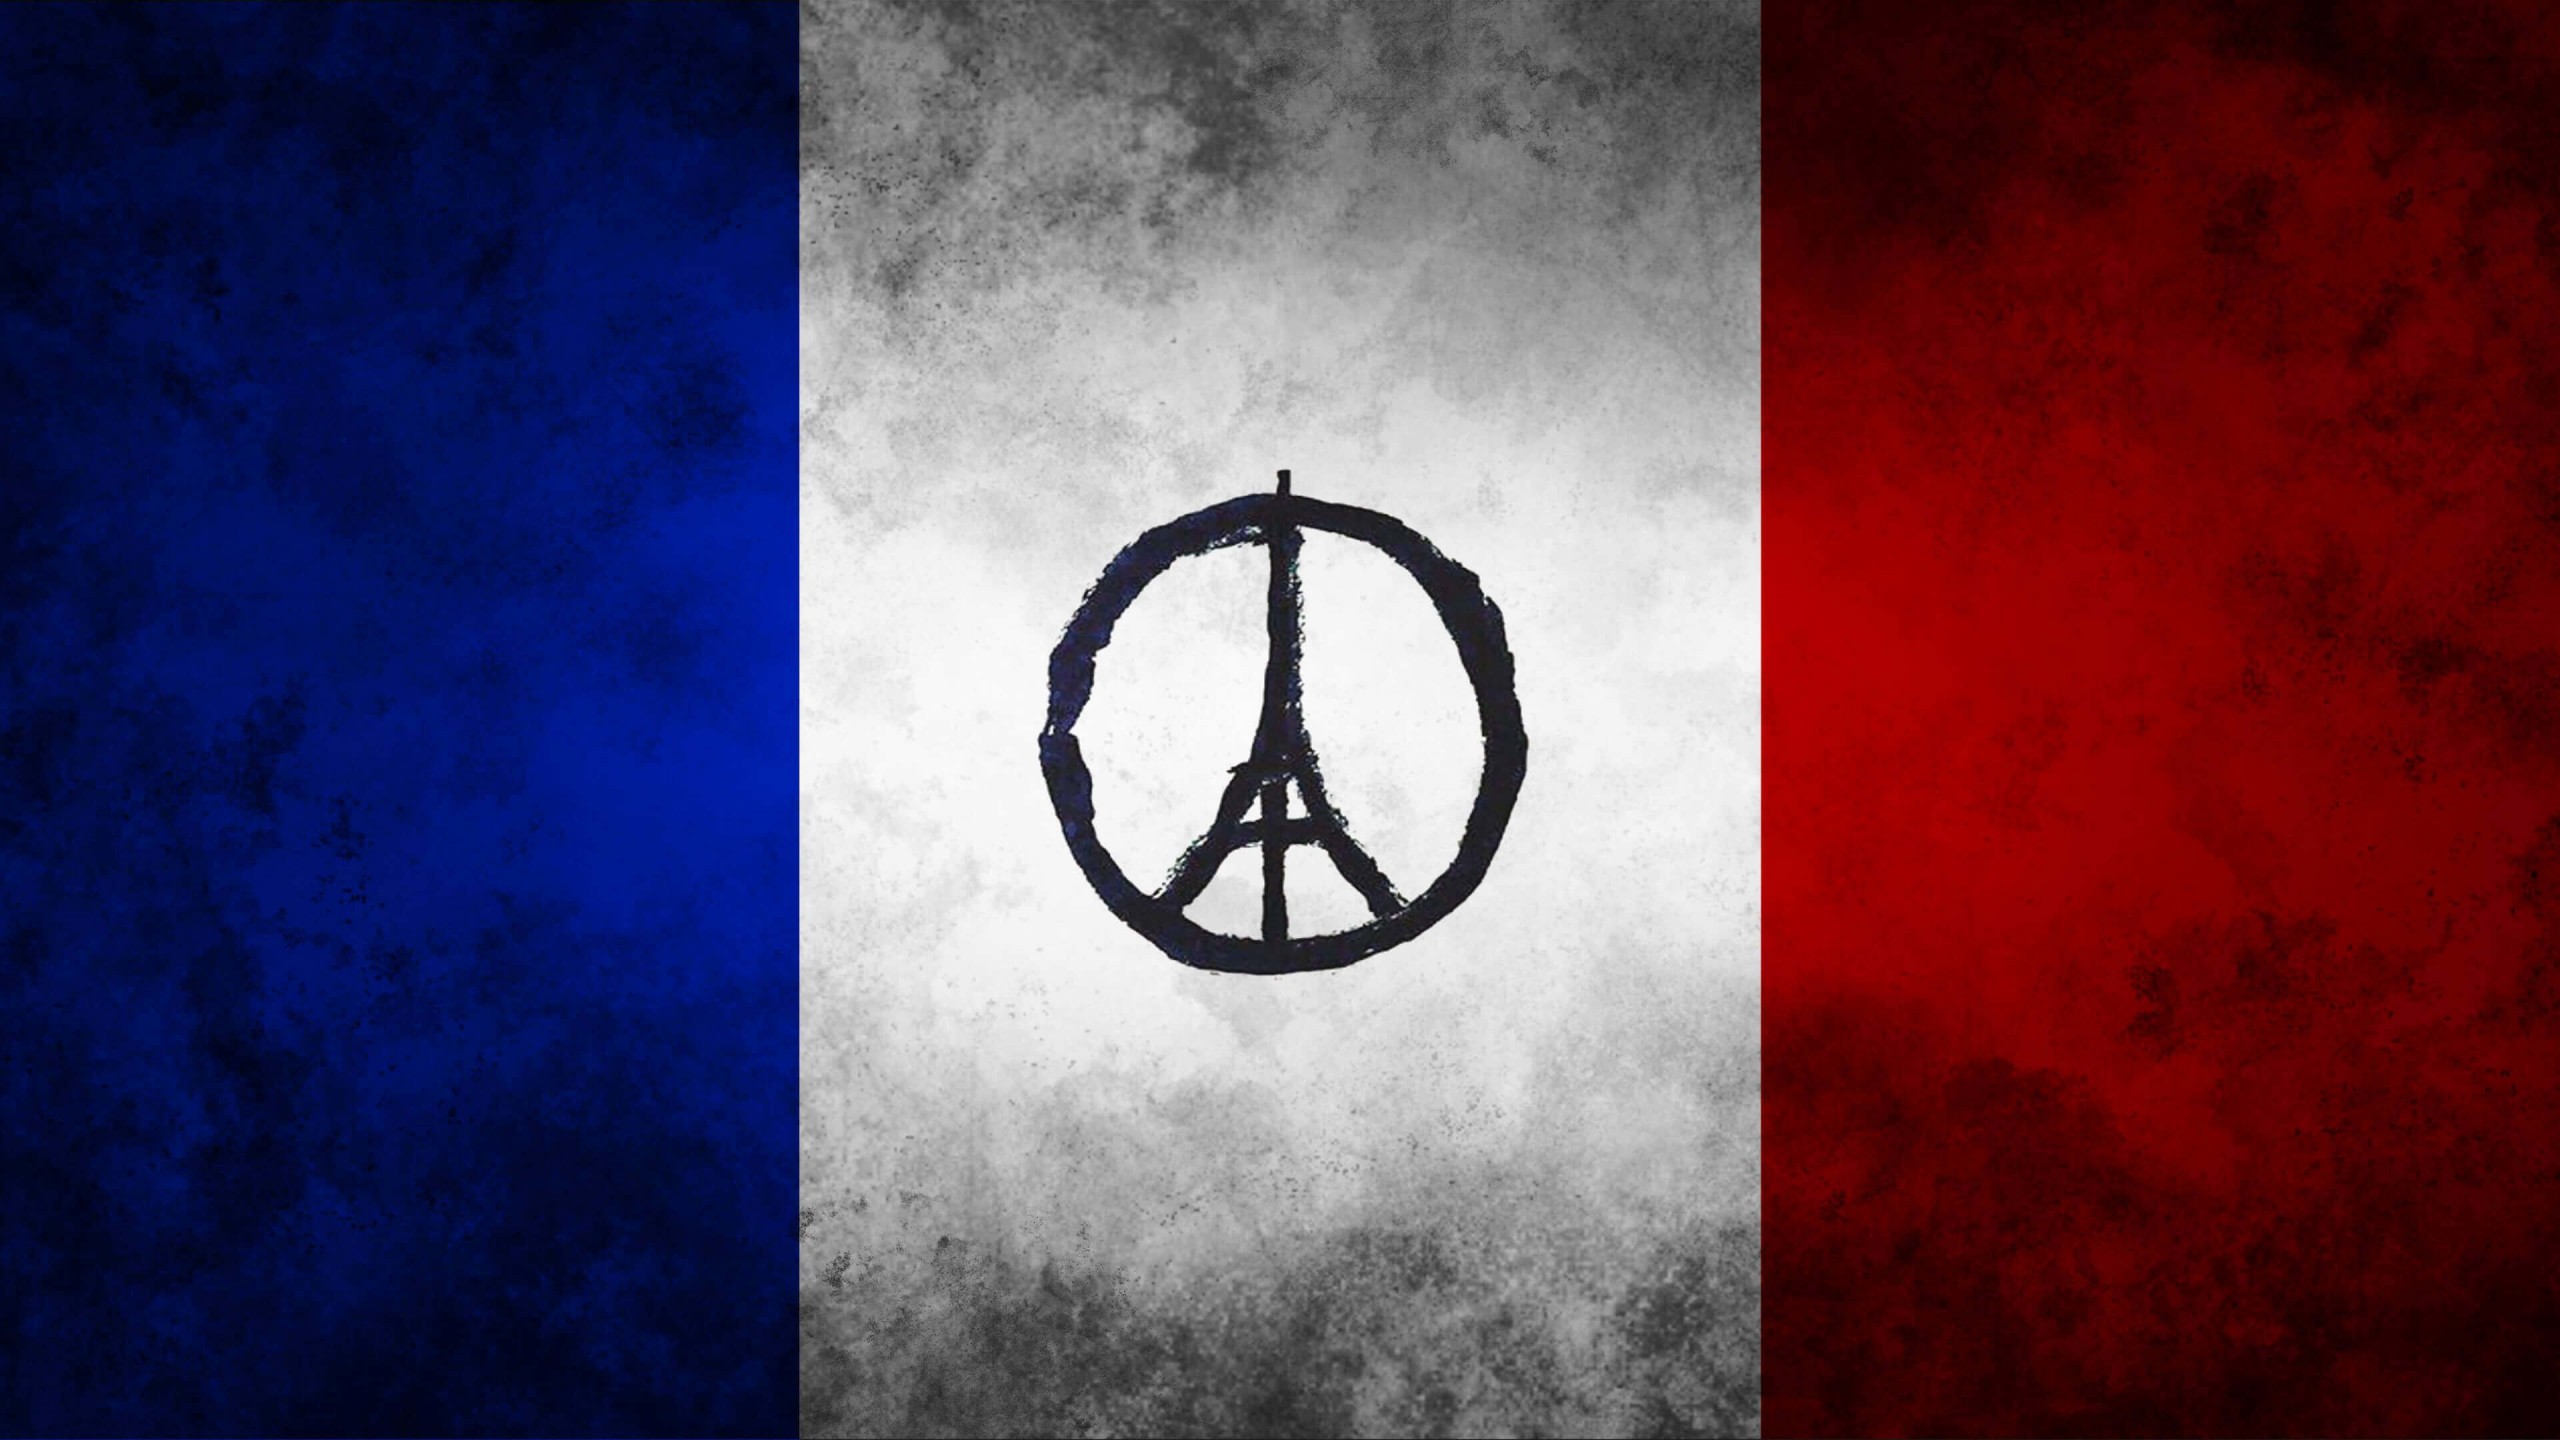 Pray For Paris Wallpaper for Social Media YouTube Channel Art